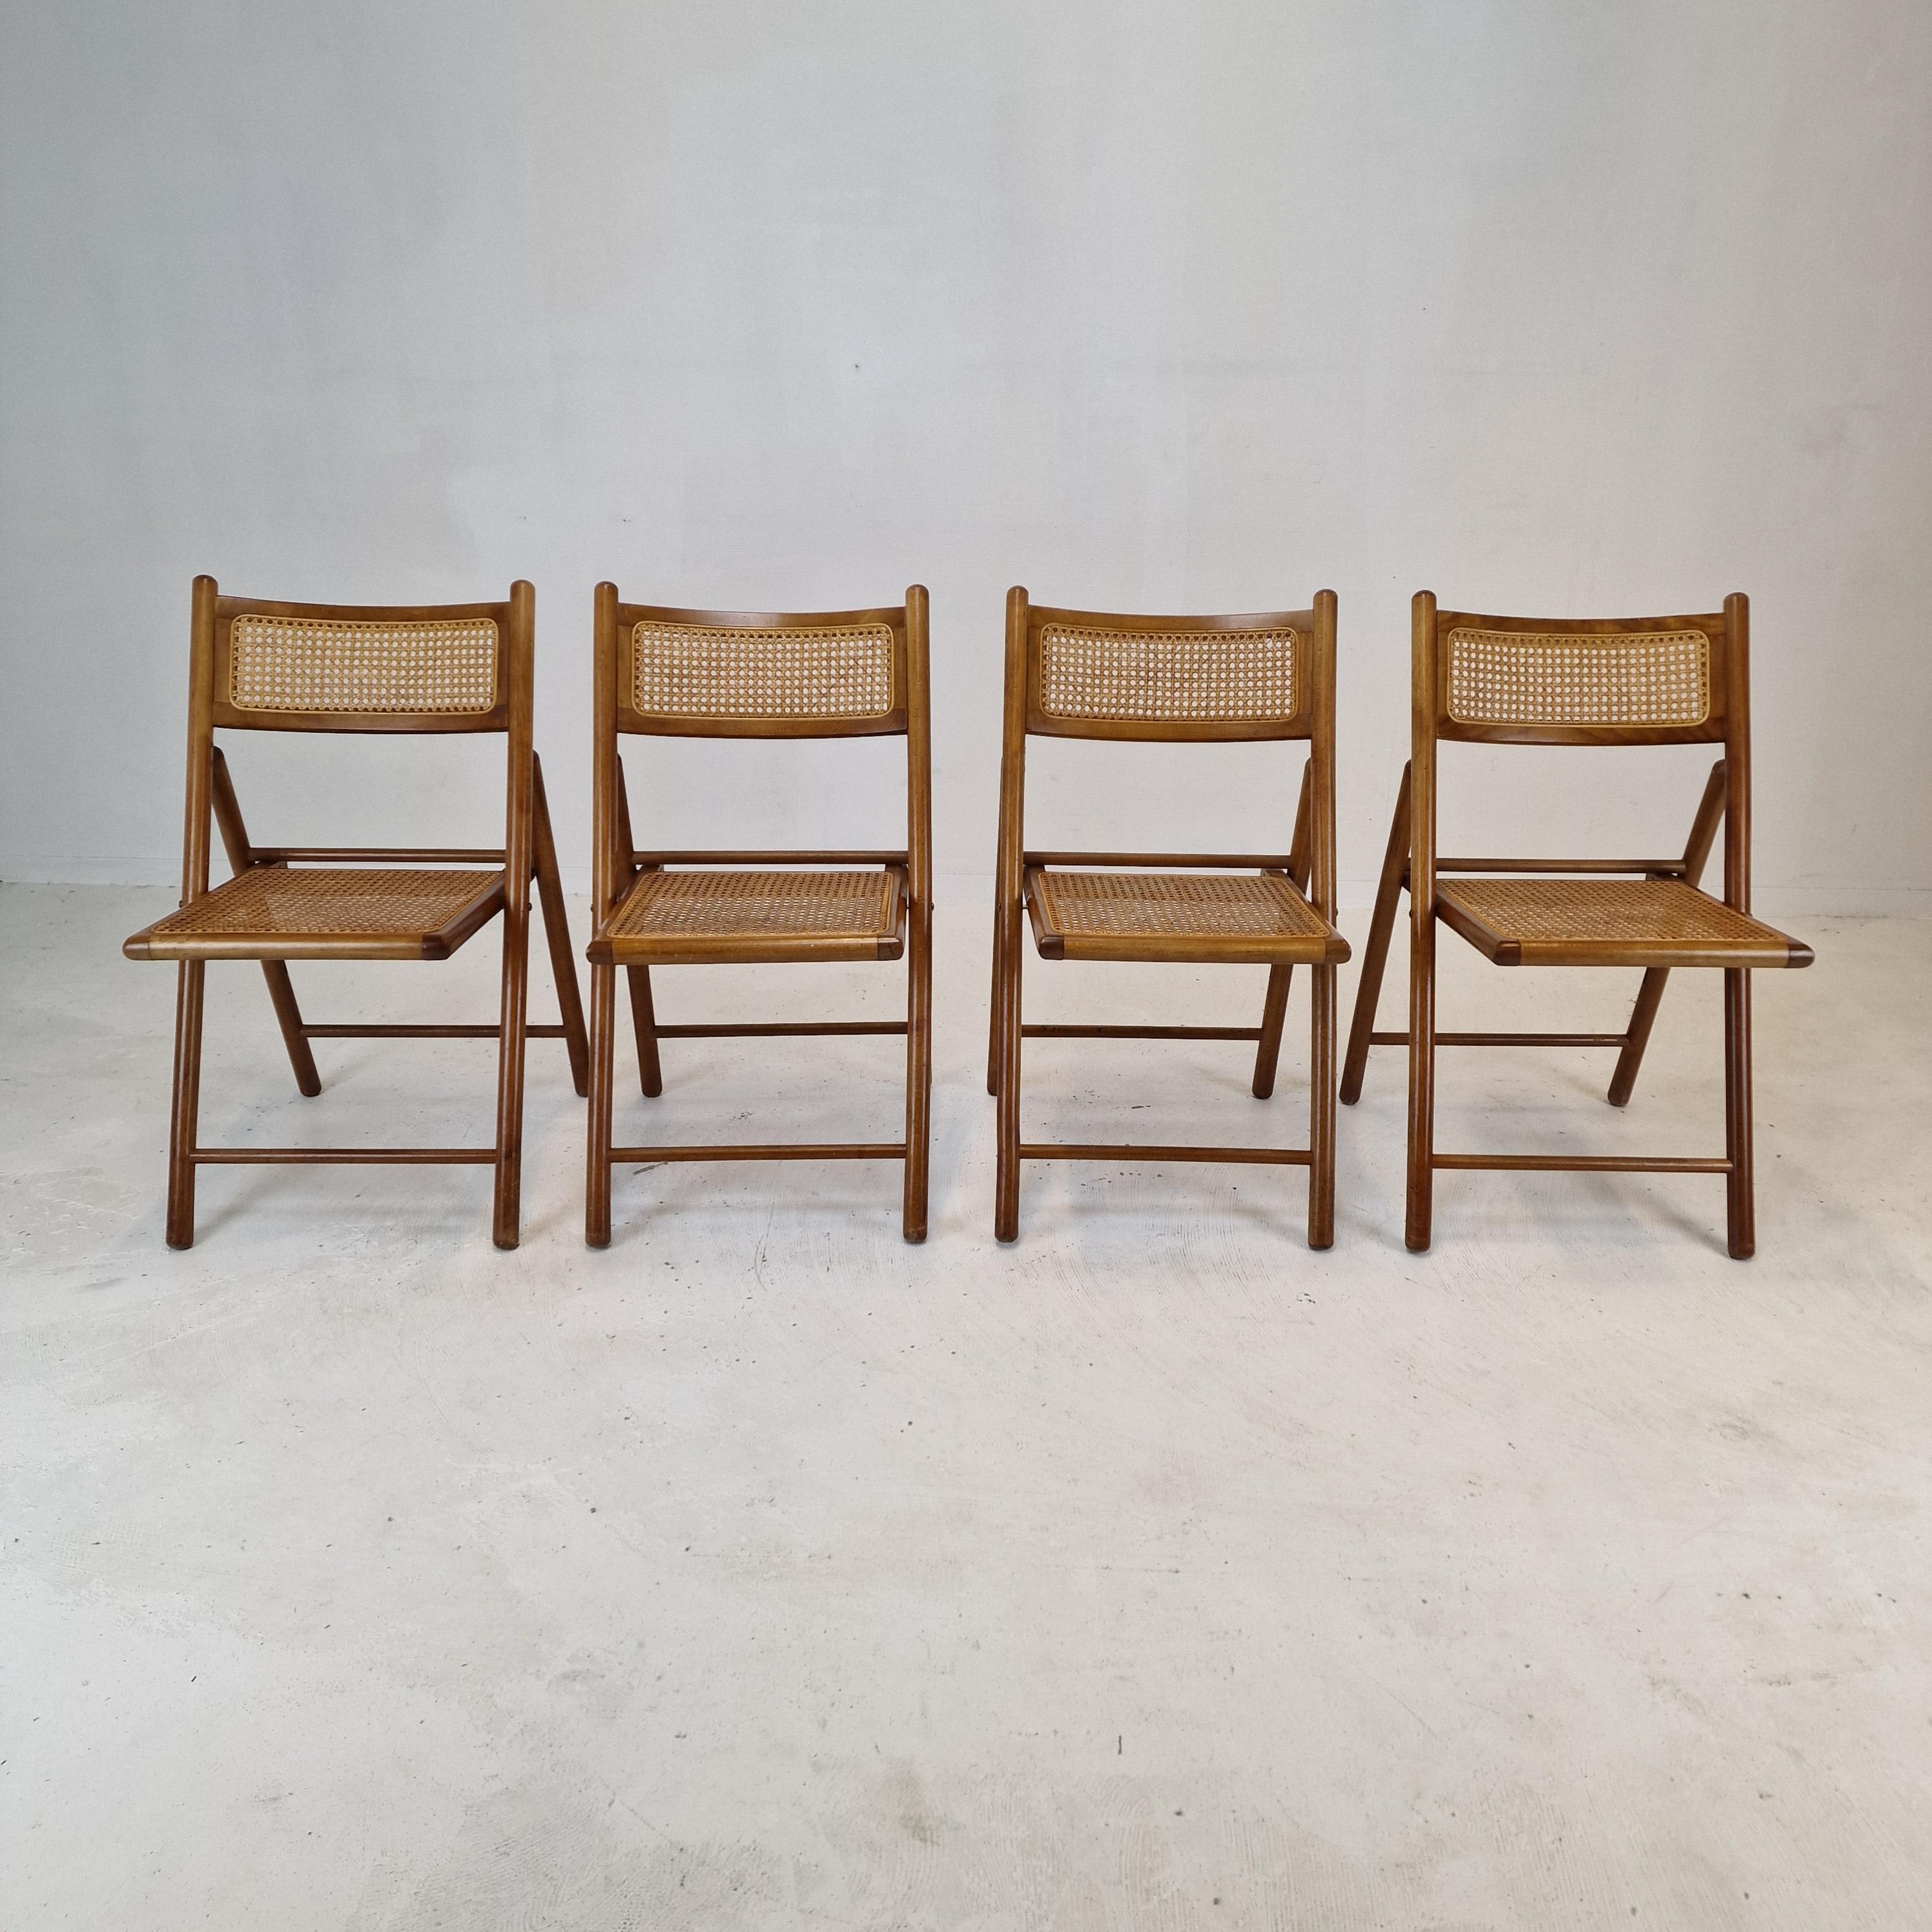 Sehr schöner Satz von 4 italienischen Klappstühlen, hergestellt in den 1980er Jahren.

Die Sitzflächen der Stühle sind aus Weidengeflecht gefertigt.
Die Struktur ist aus Massivholz gefertigt.

Die Stühle sind in gutem Vintage-Zustand.

Wir